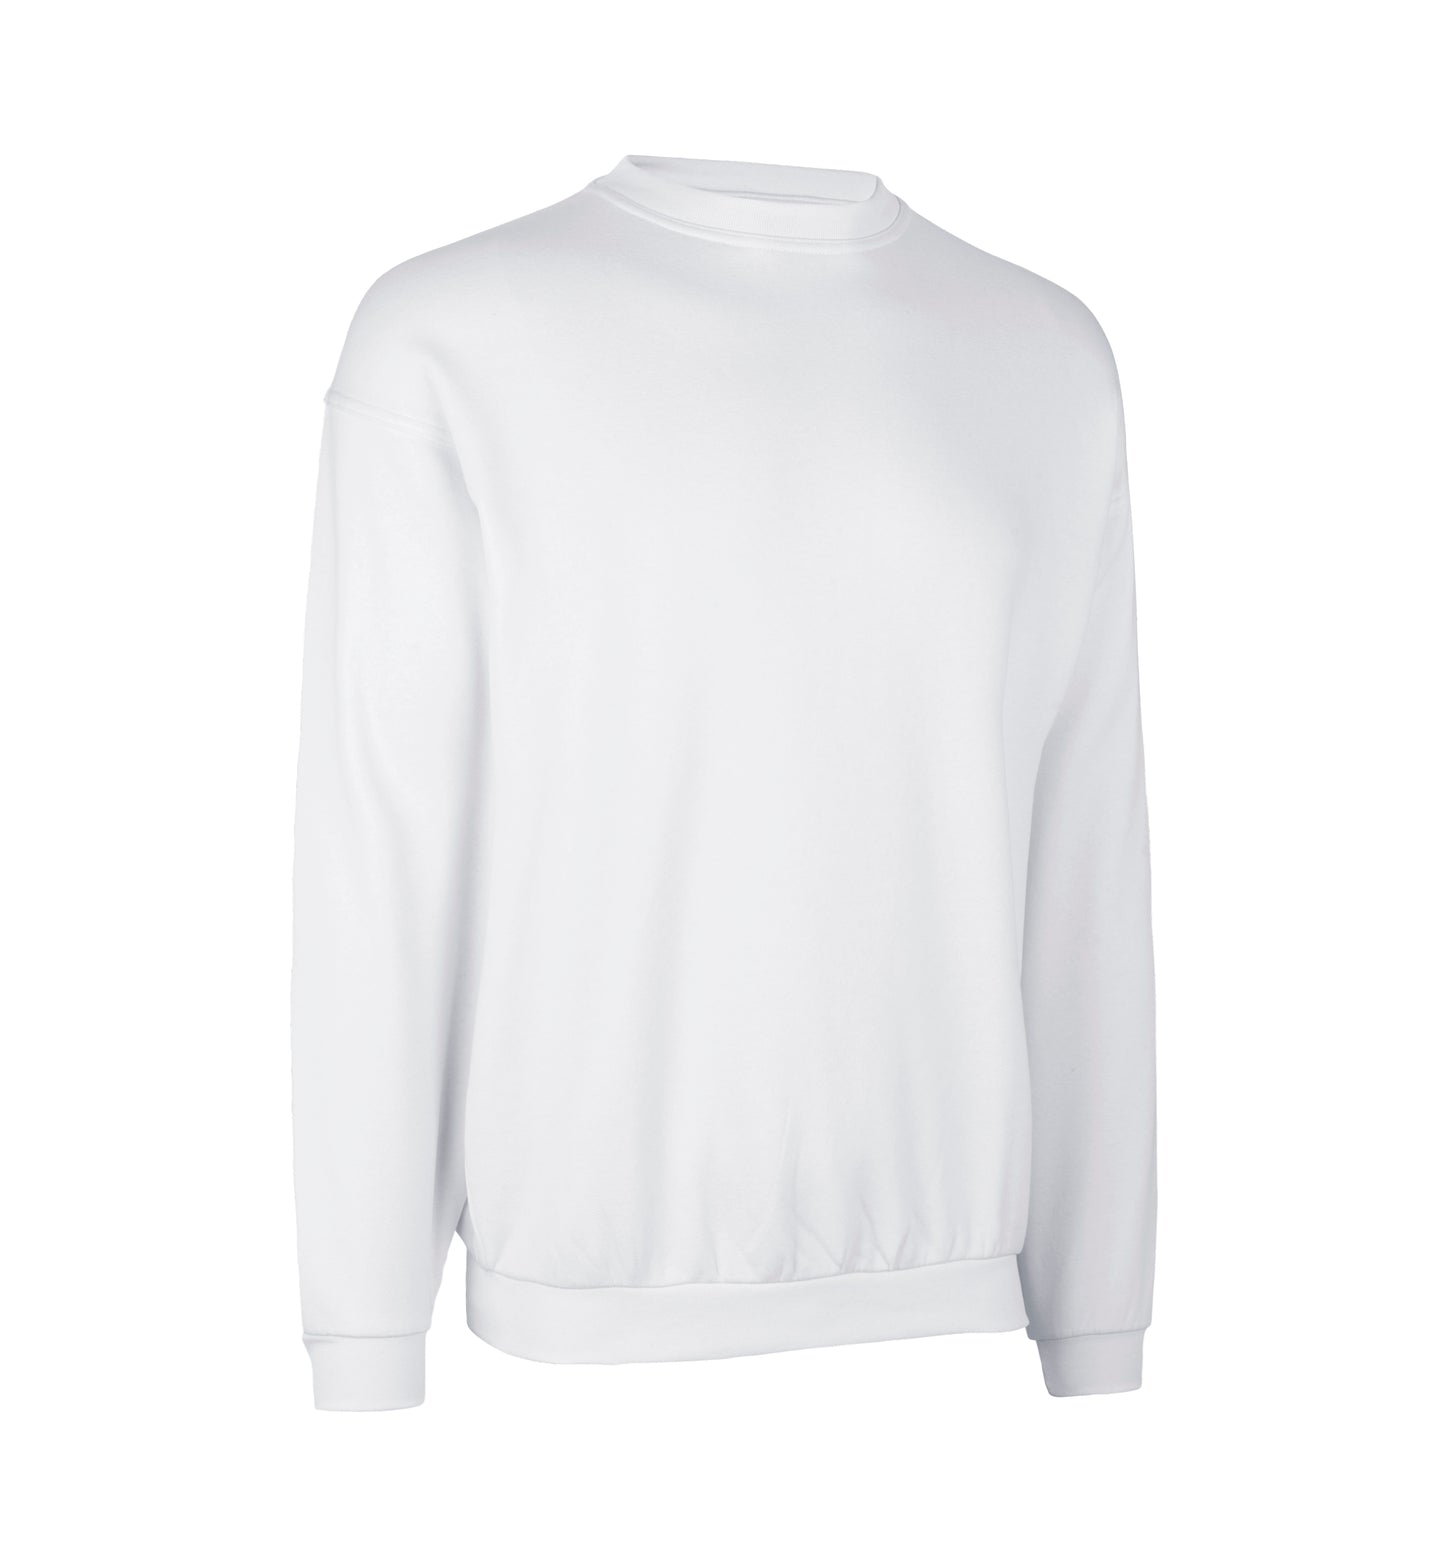 ID PRO Wear Sweatshirt Classic 0360 (Privatverkauf)